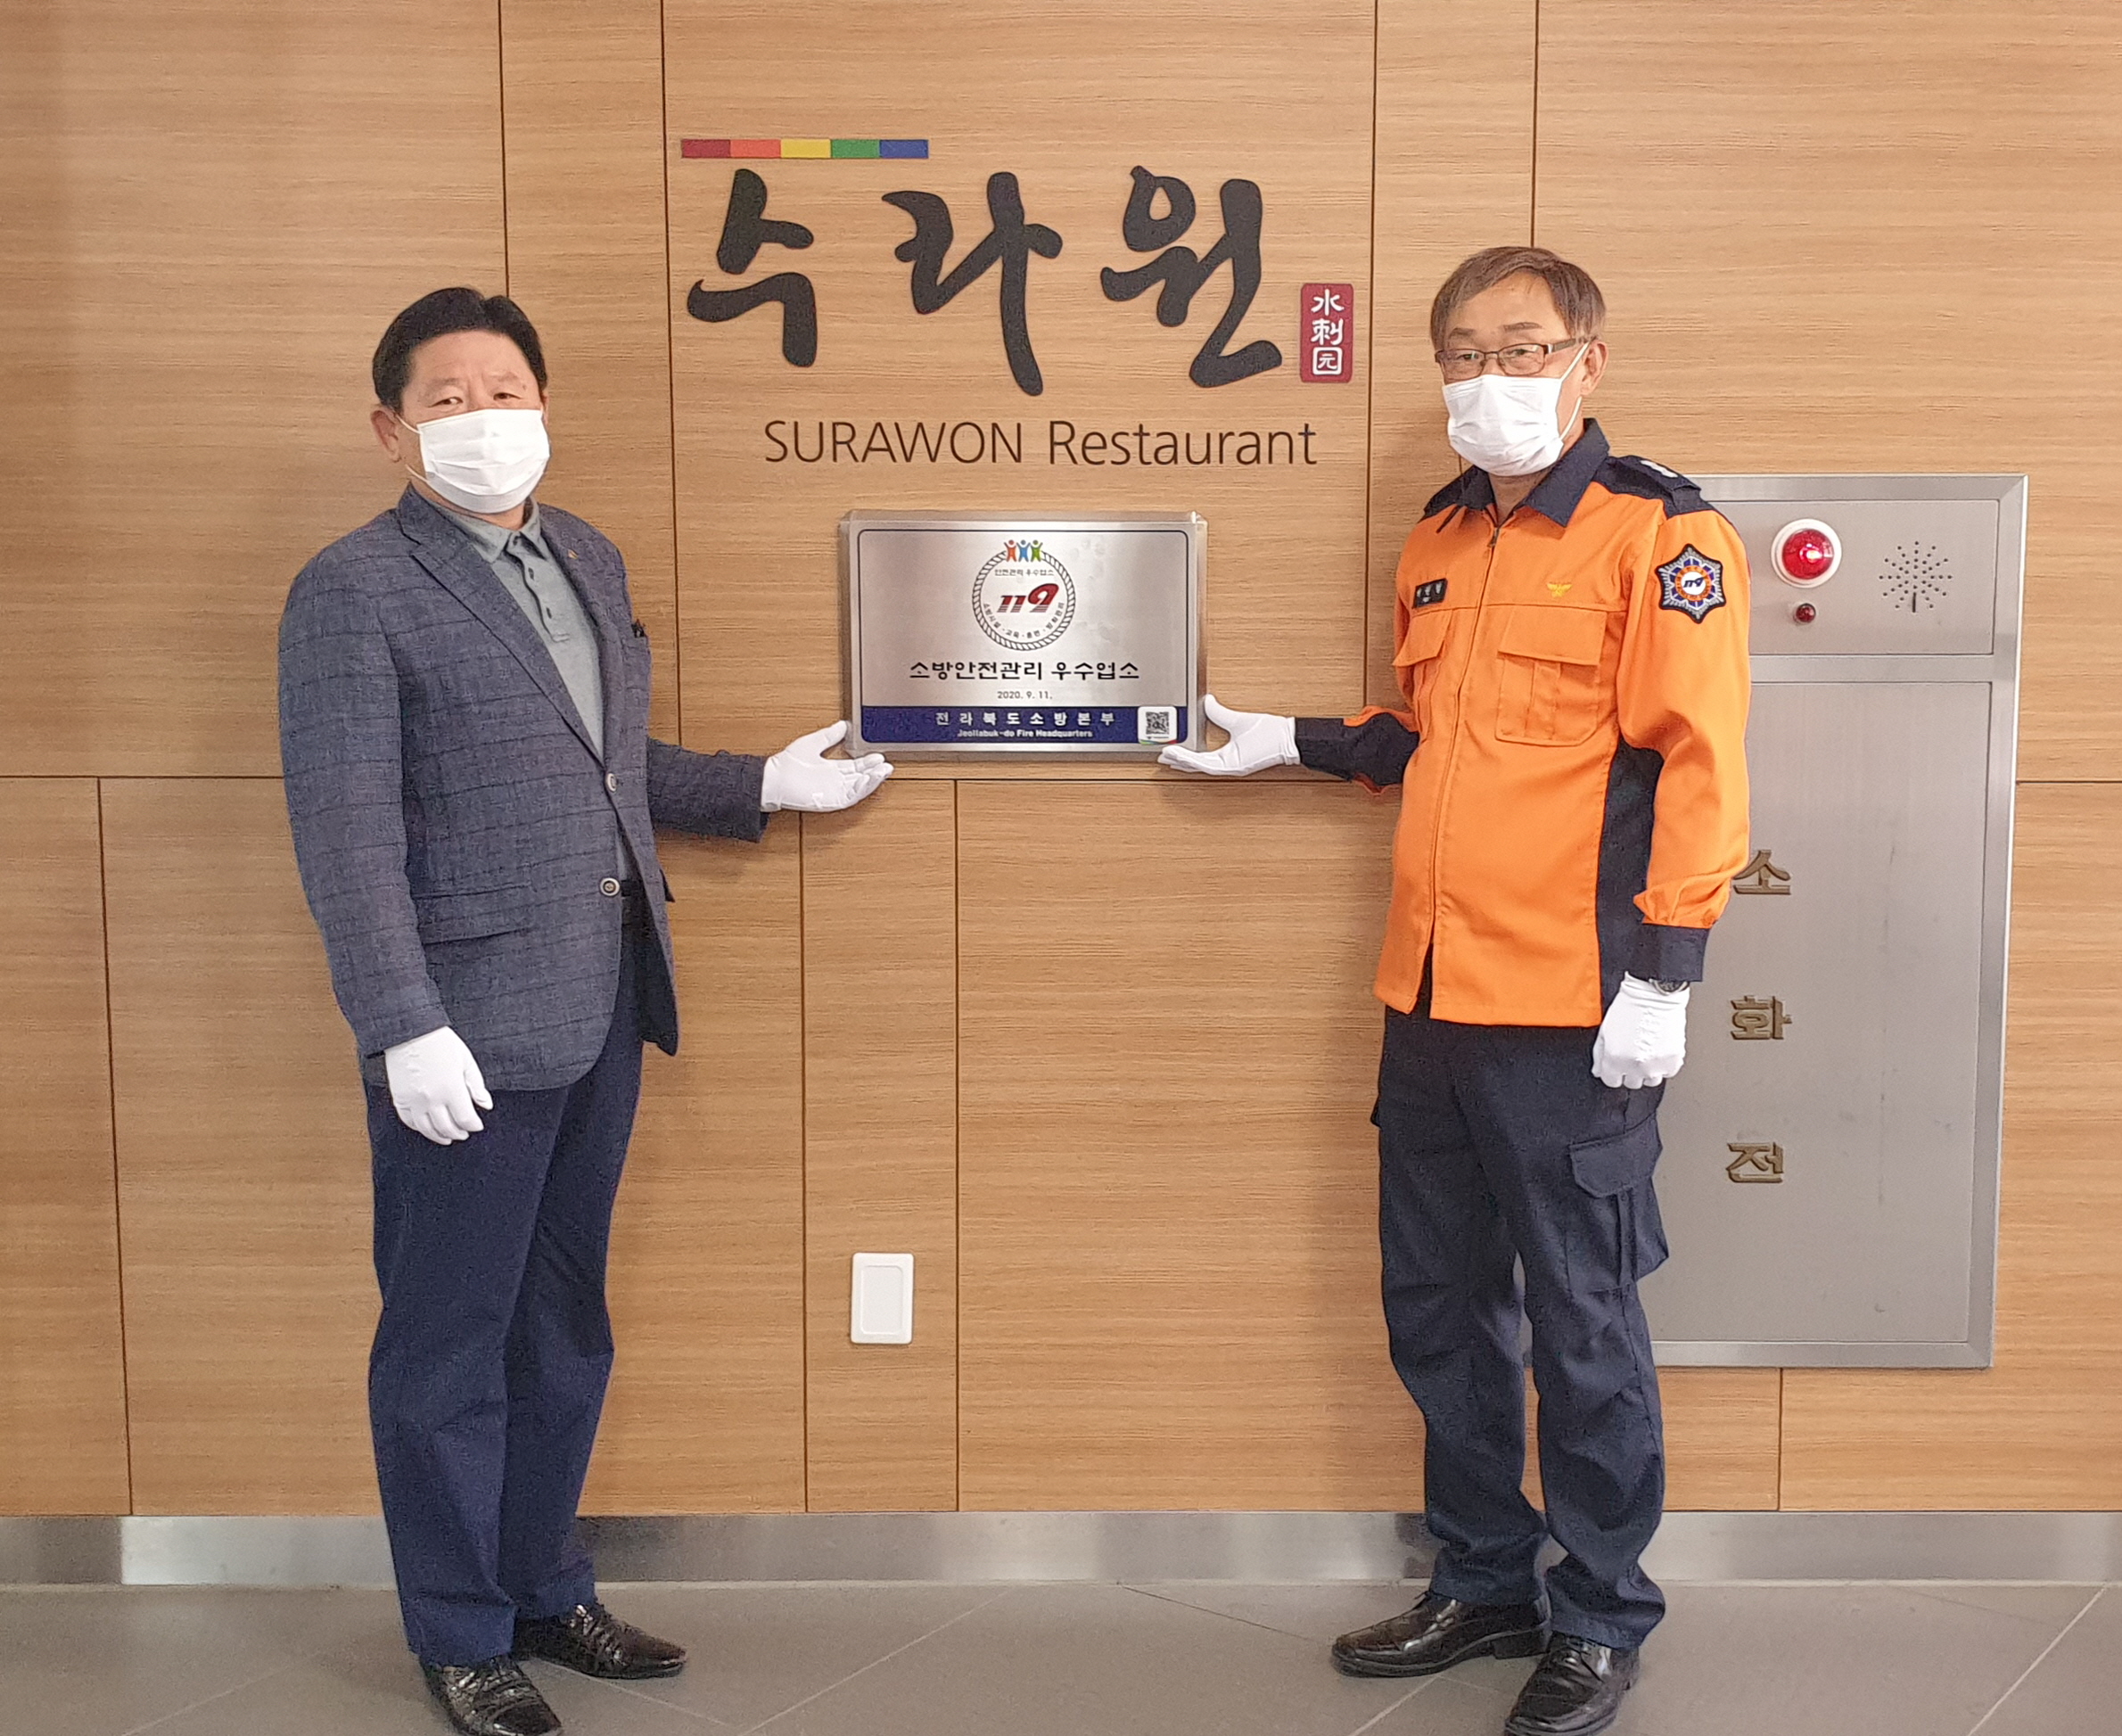 ‘태권도원 수라원’, 다중이용업소 안전관리 우수업소 선정 모습